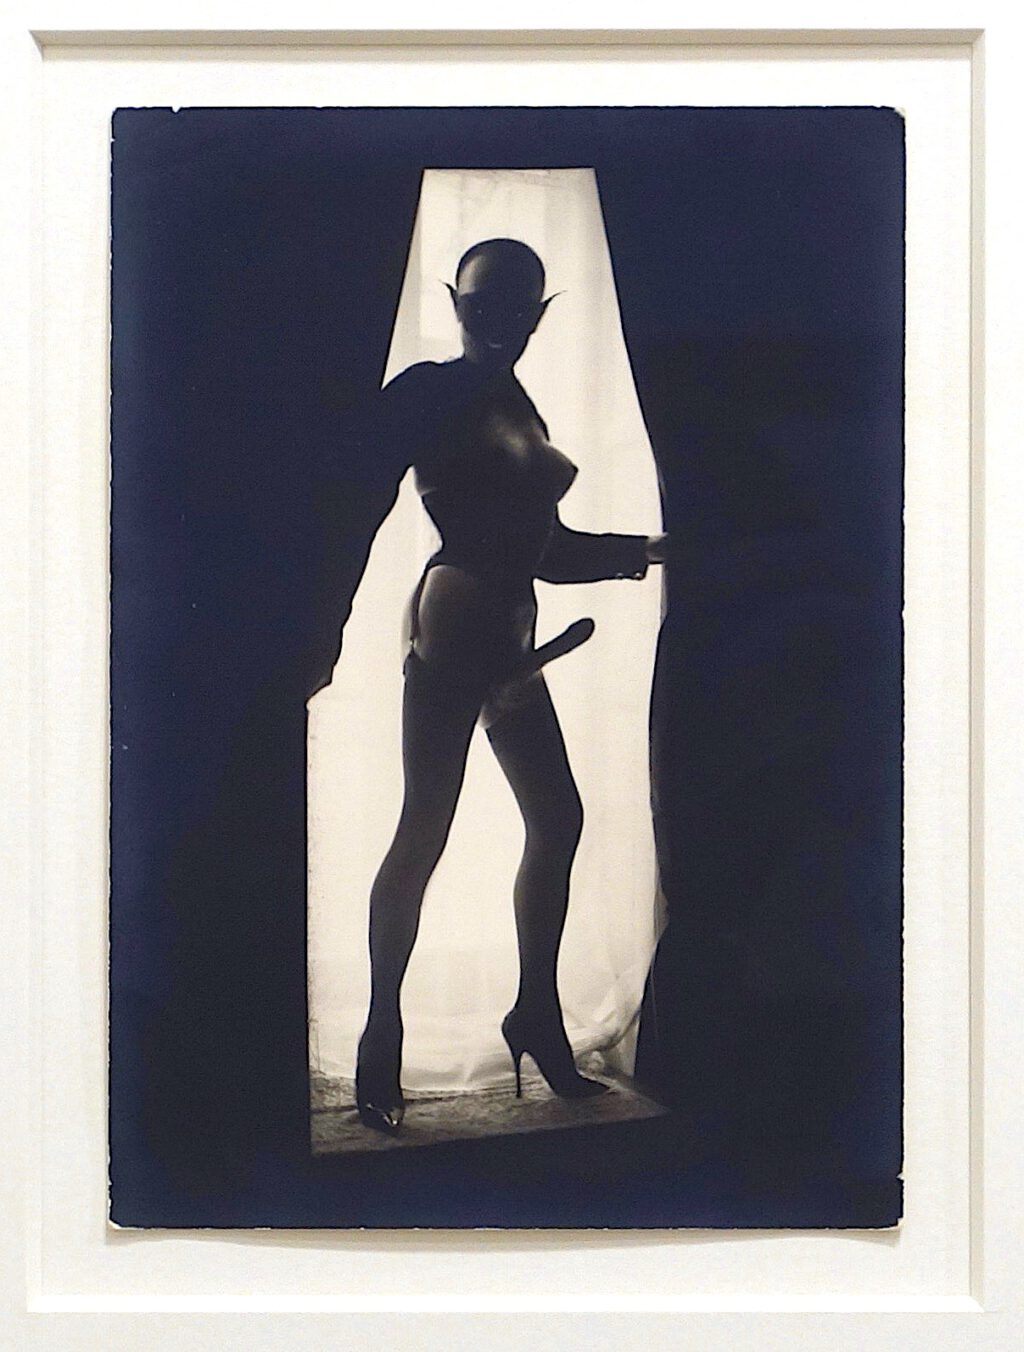 Pierre Molinier Chaman 1966 Tirage argentique d’époque, 17.5 x 12.5 cm, 18.000 Euro @ Galerie 1900-2000